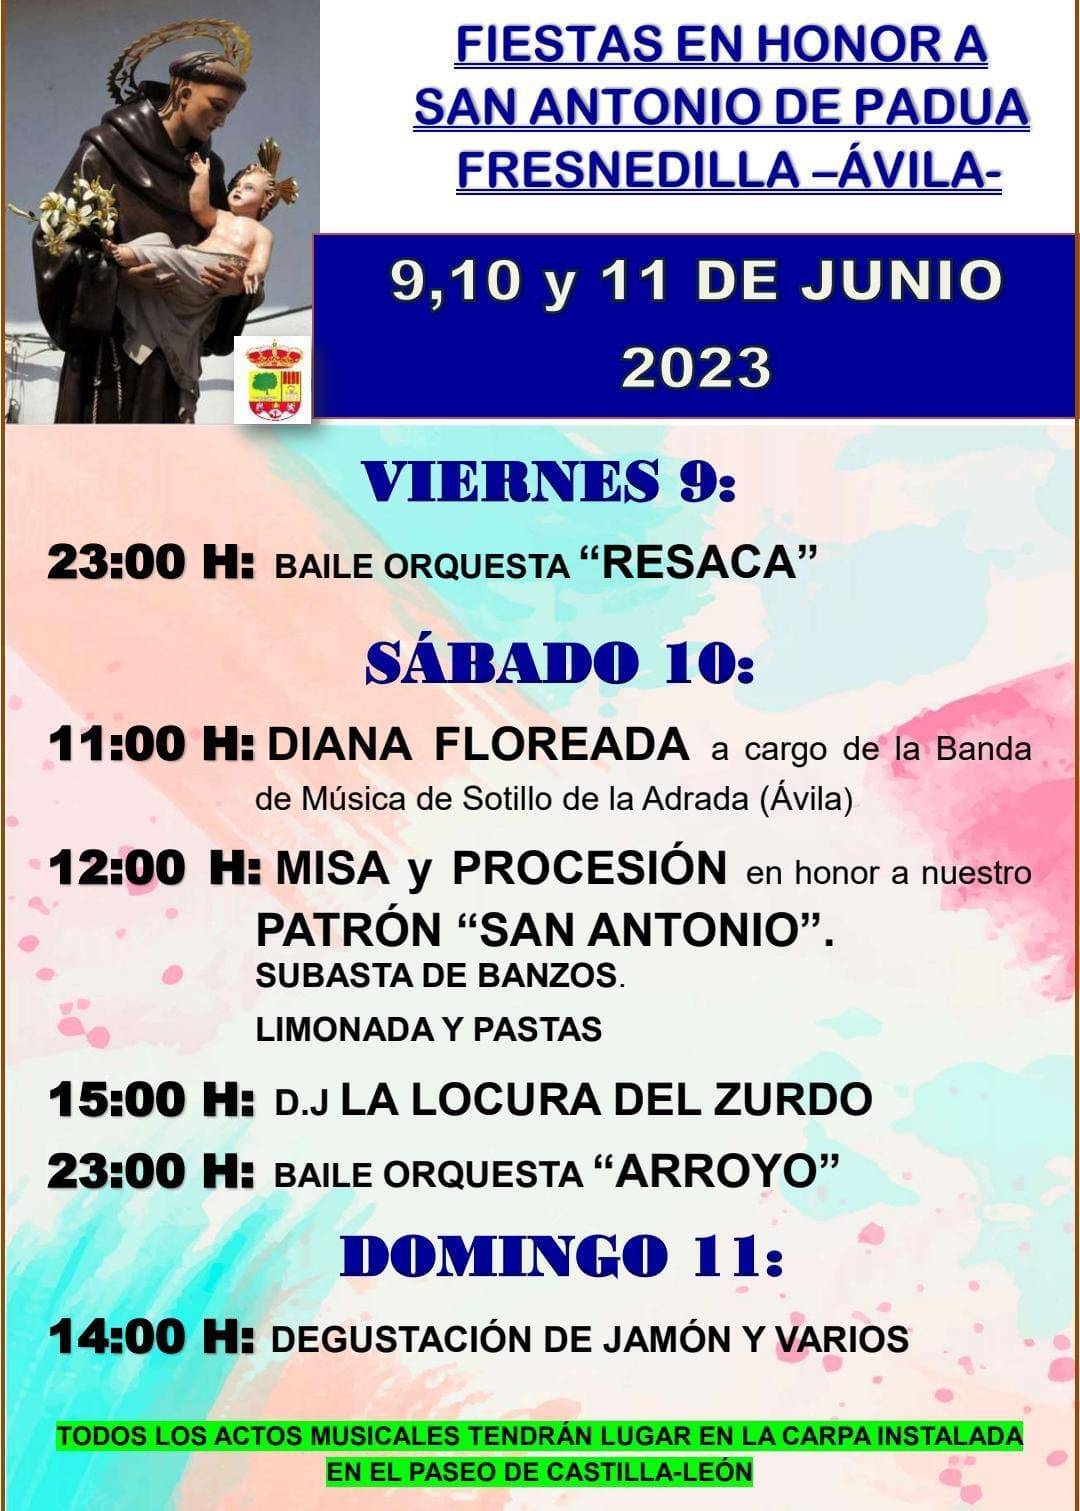 Fiestas en honor a San Antonio de Padua (2023) - Fresnedilla (Ávila)